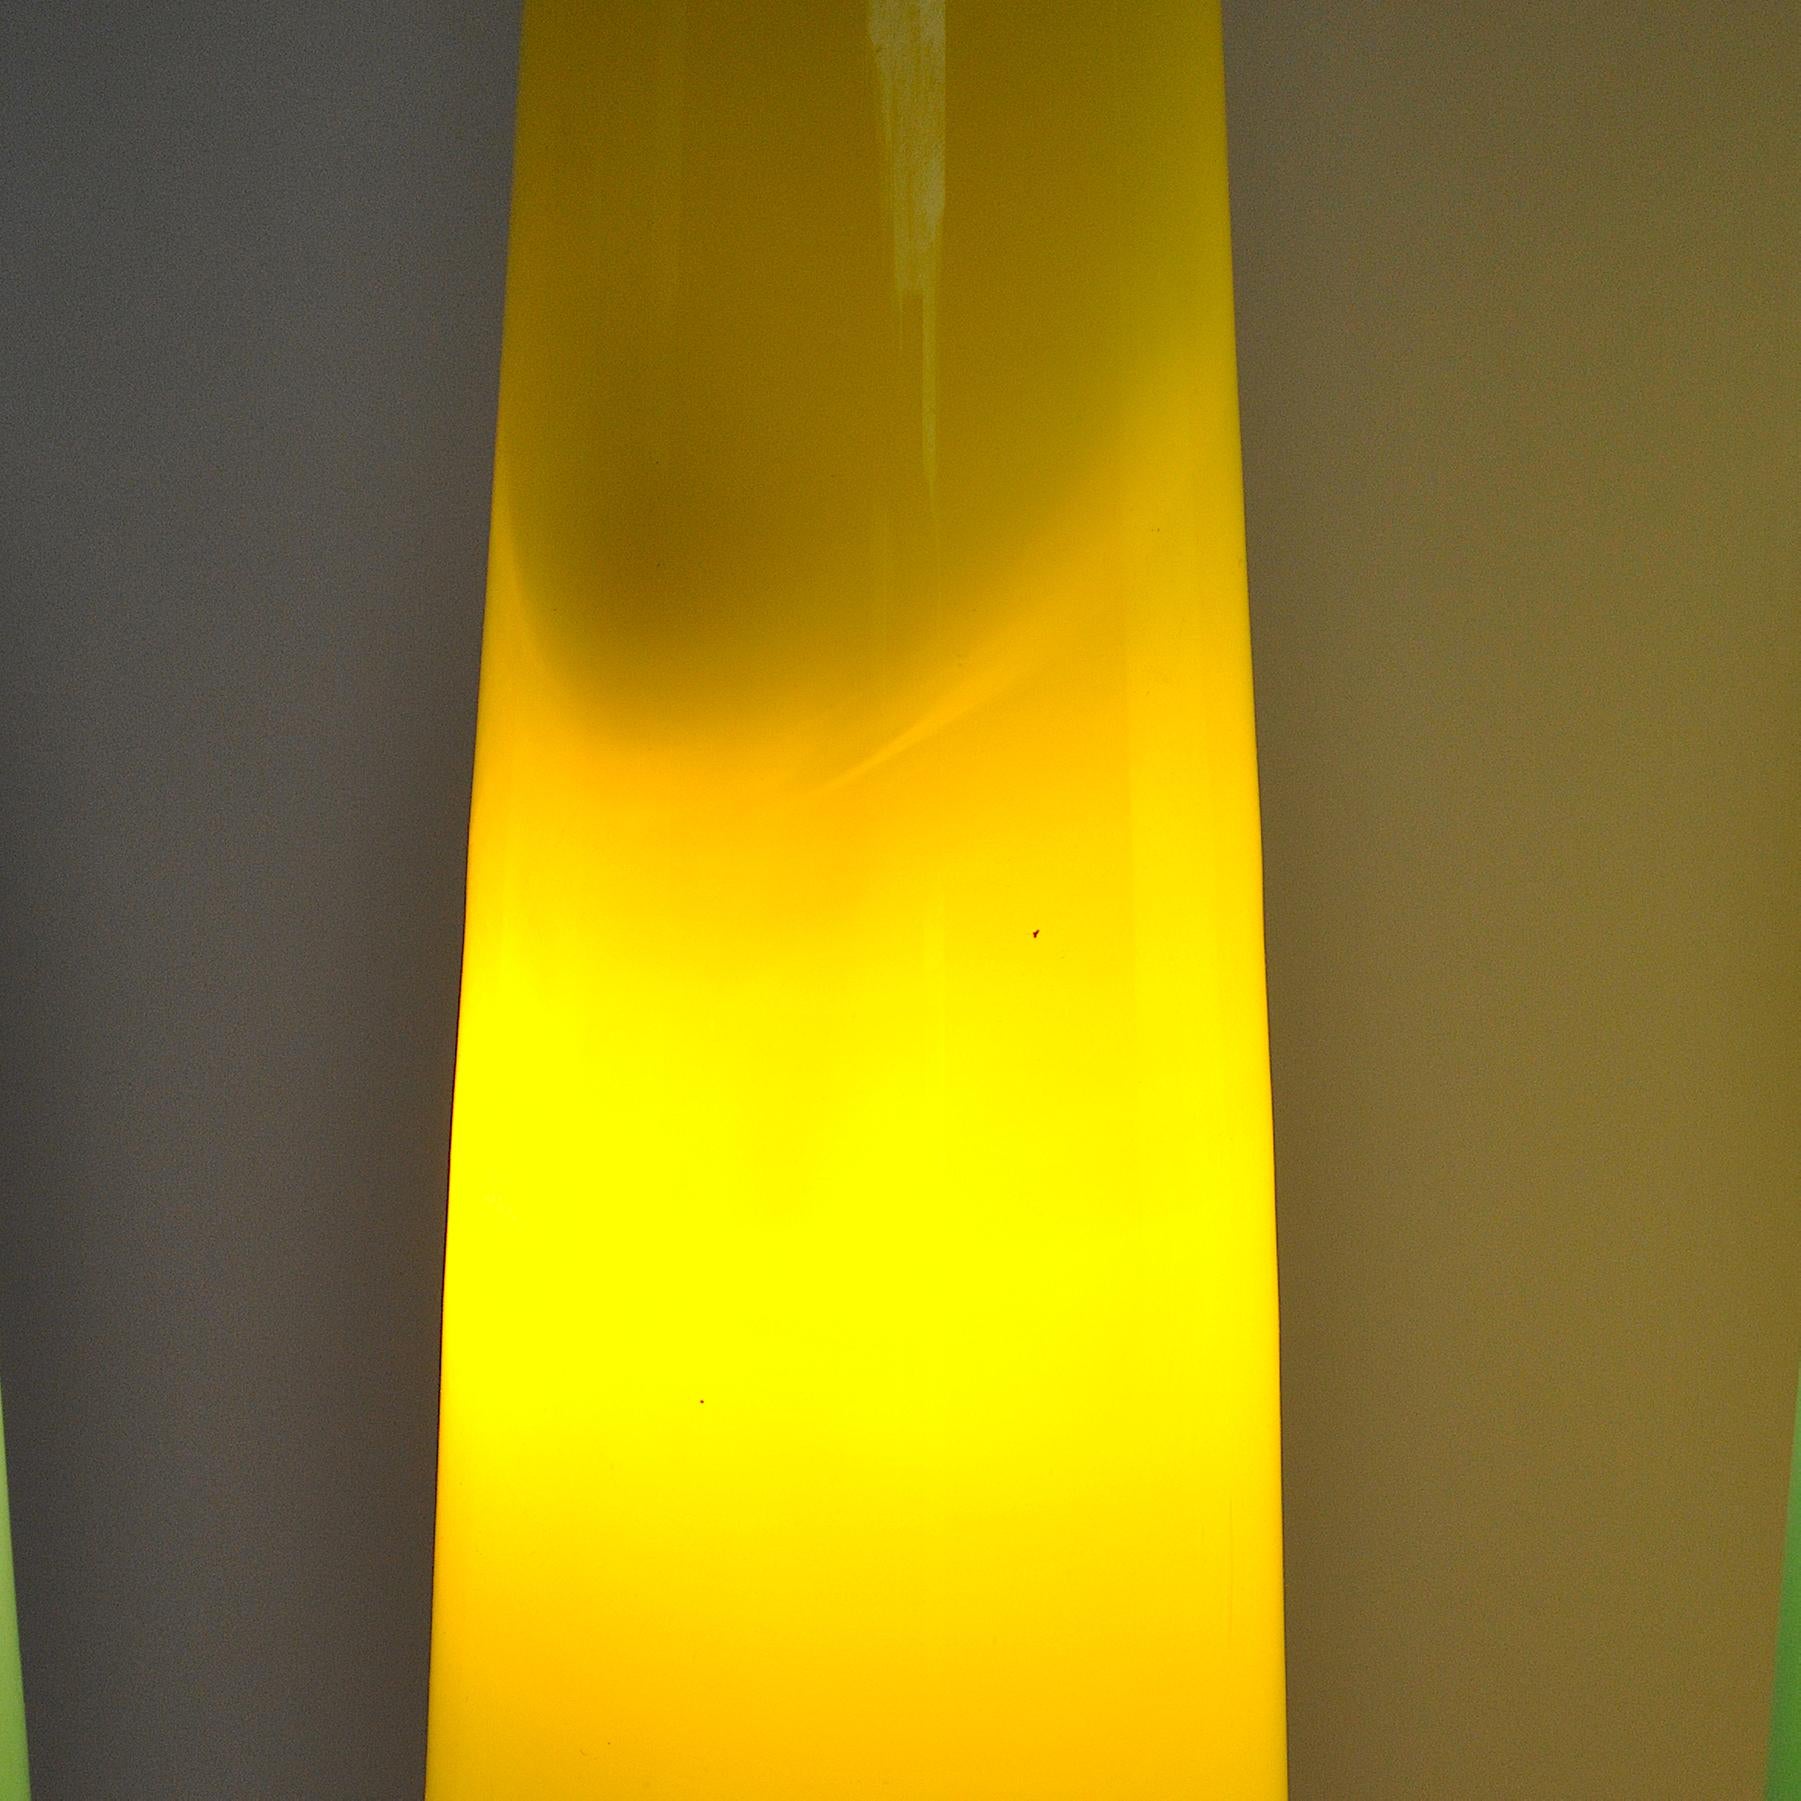 Alessandro Pianon Vistosi Chandelier in Murano Colored Glass, 60's For Sale 9